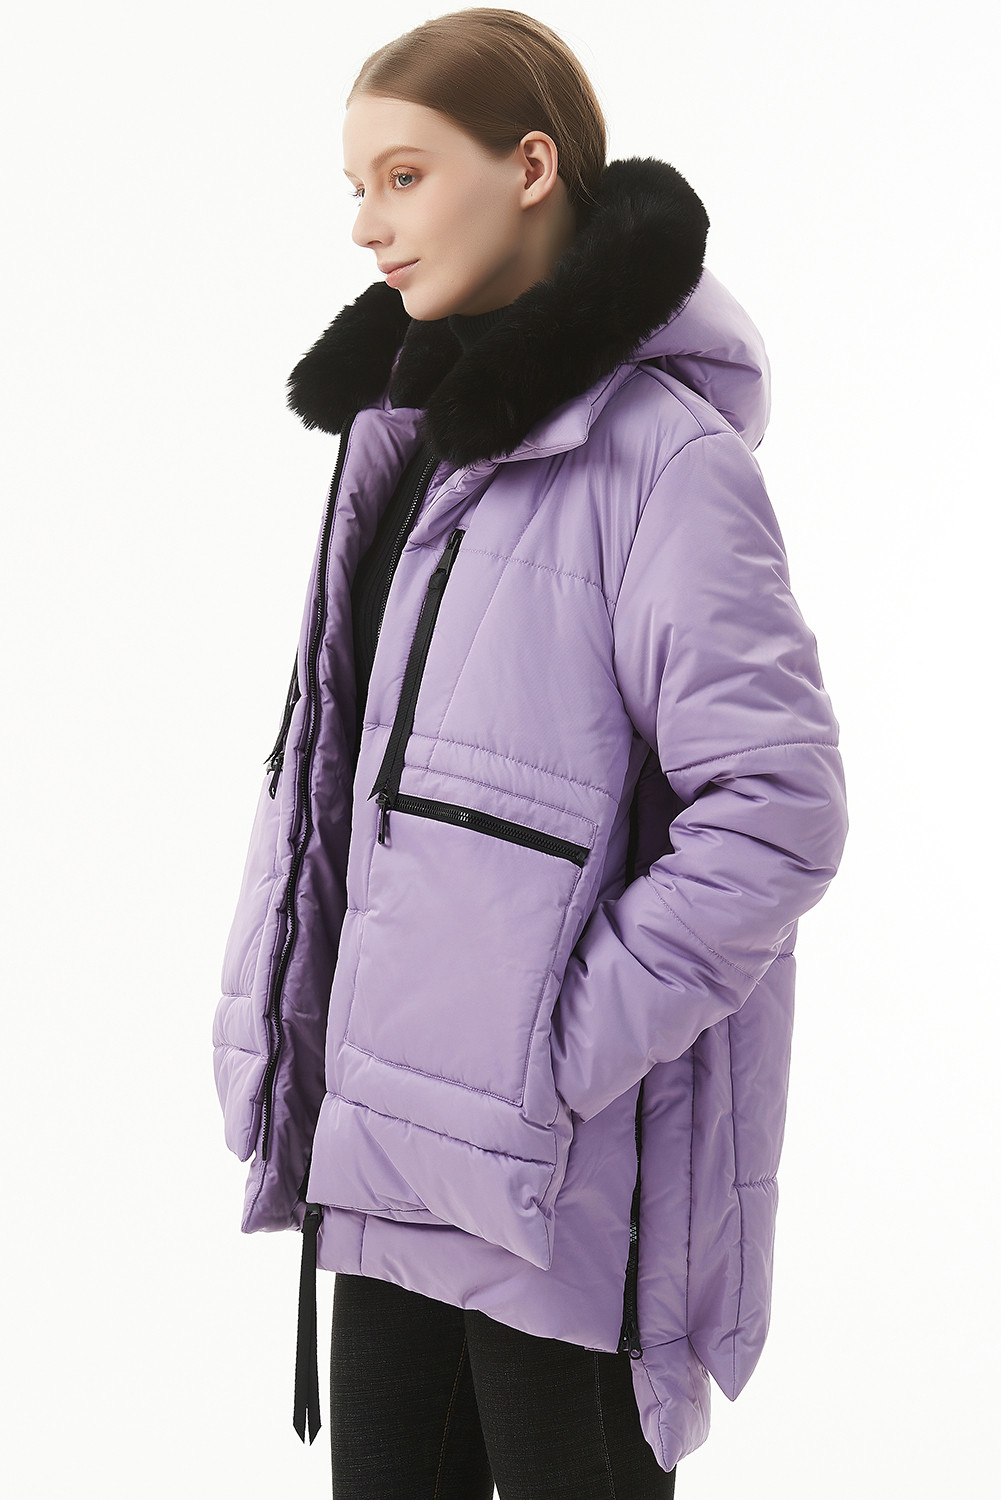 紫色毛绒亚麻拉链连帽羽绒服 LC856185